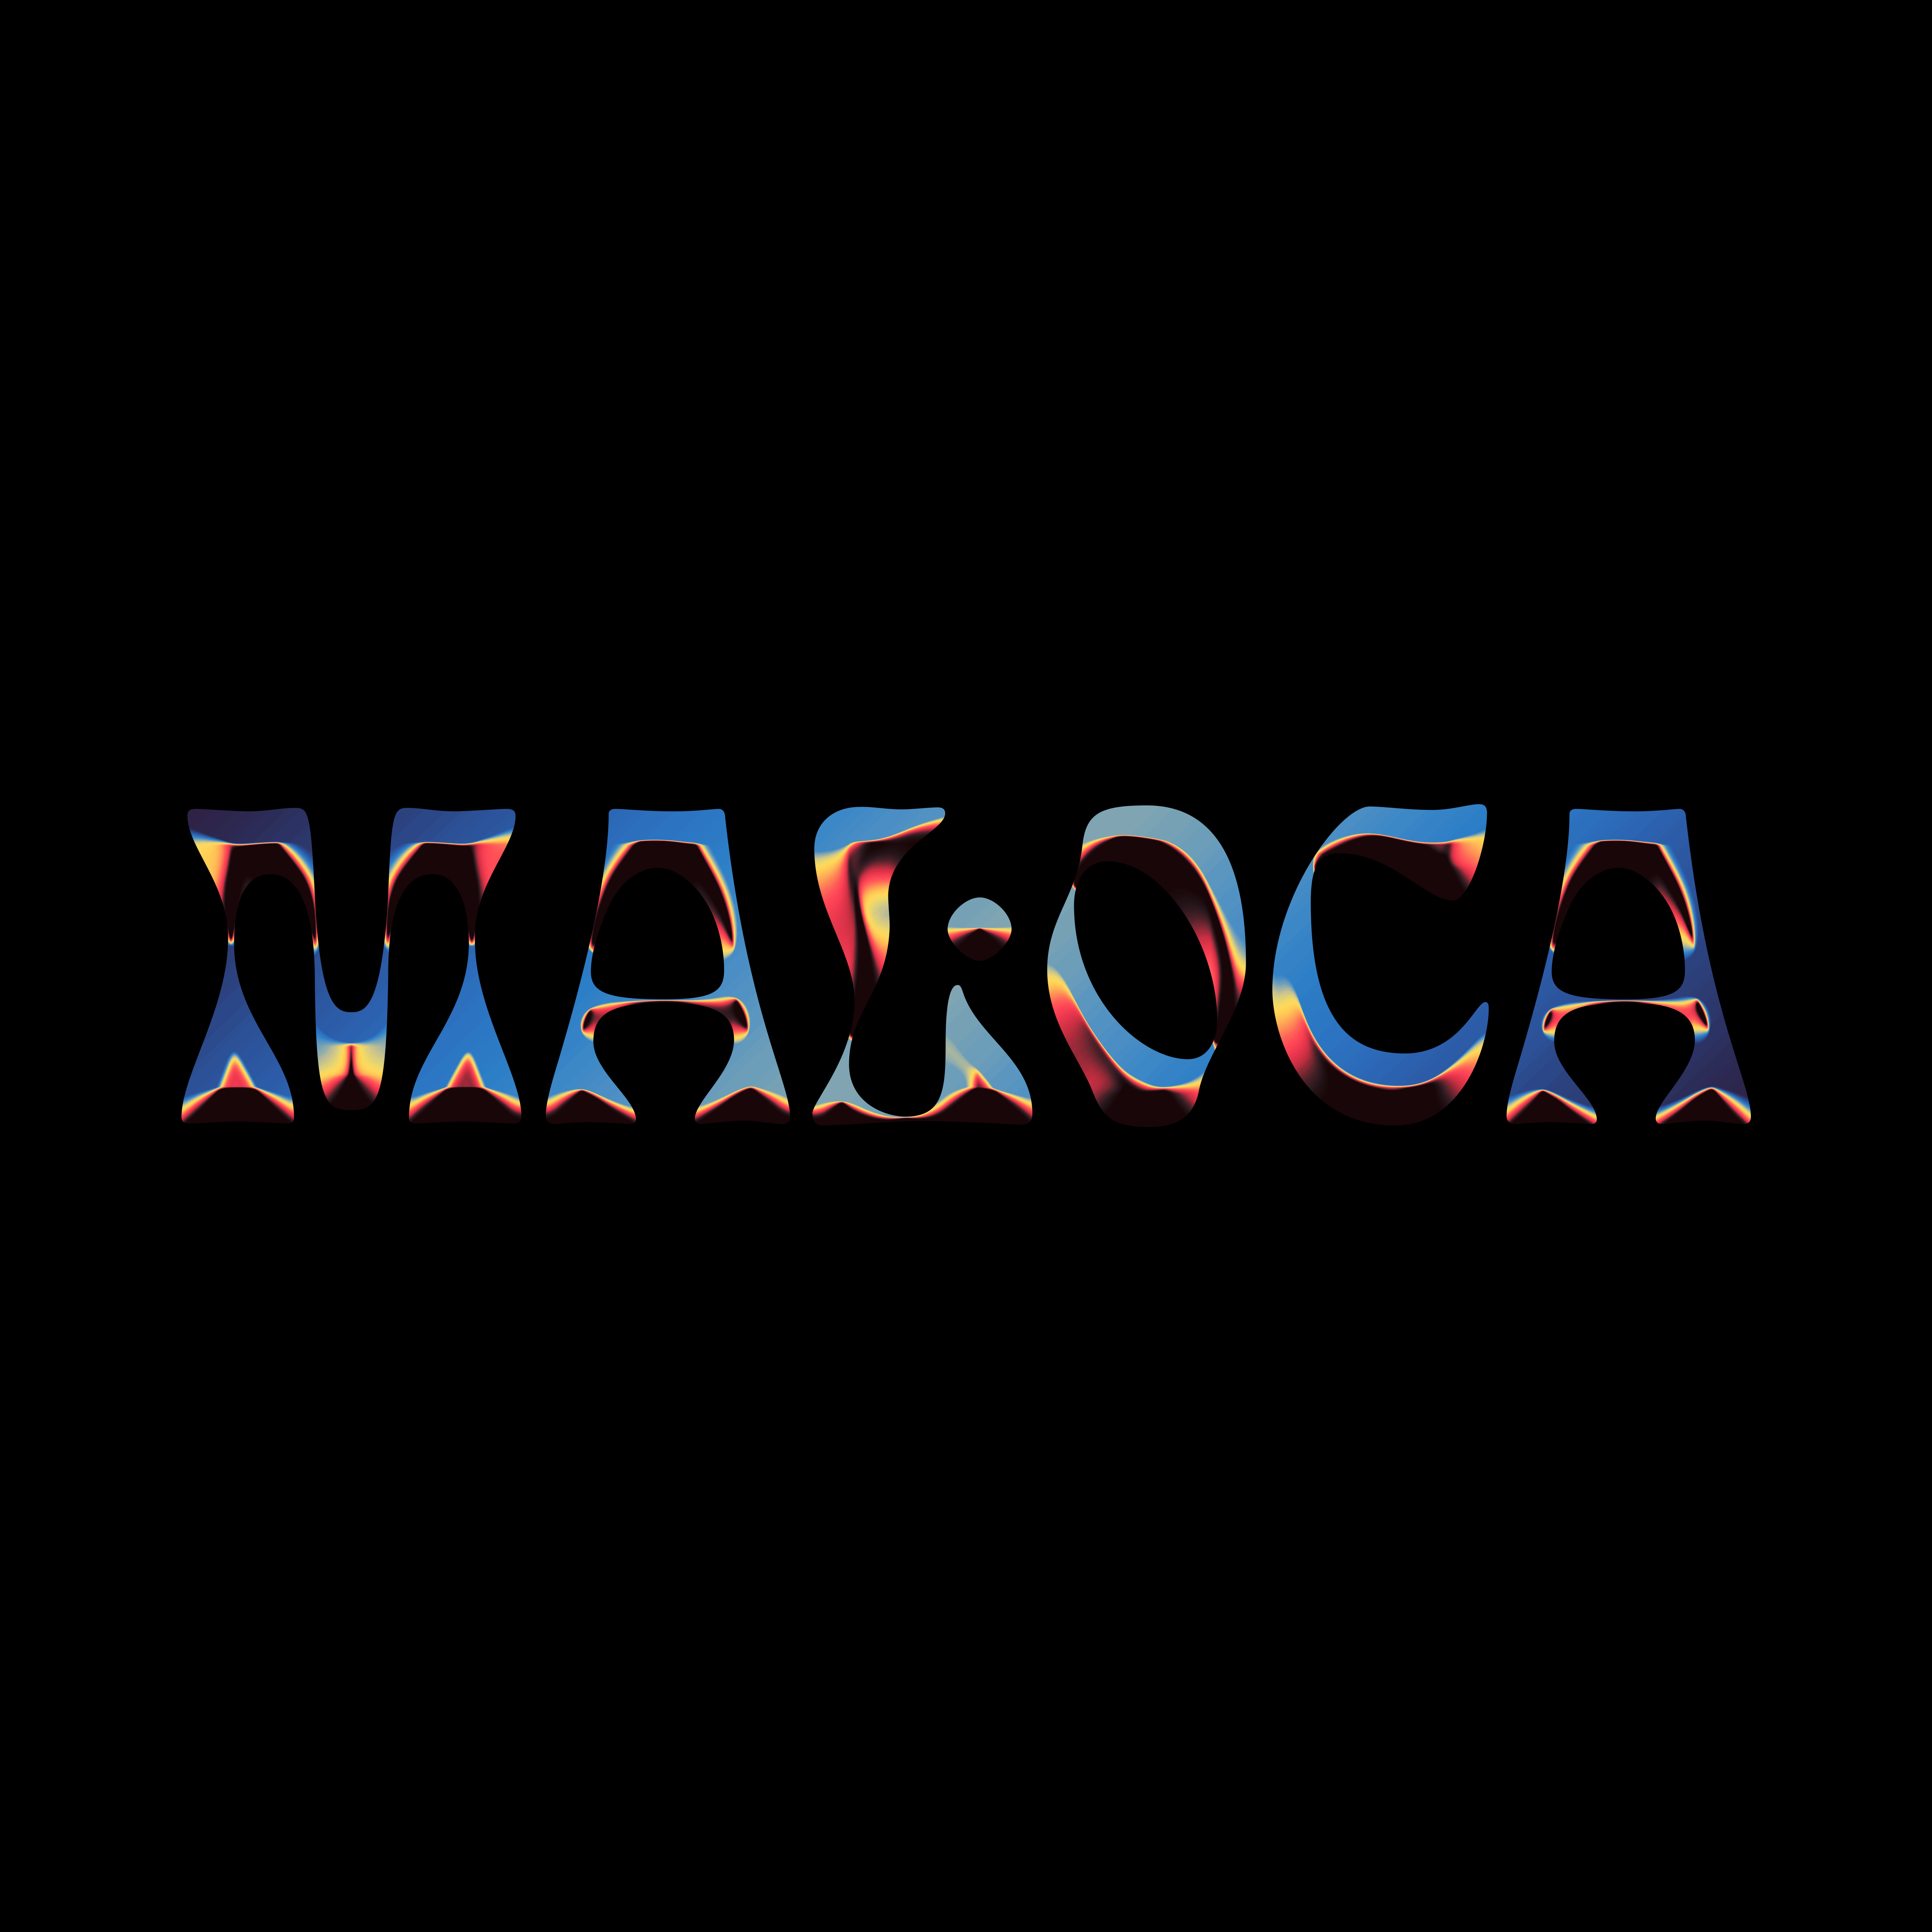 Maloca Records